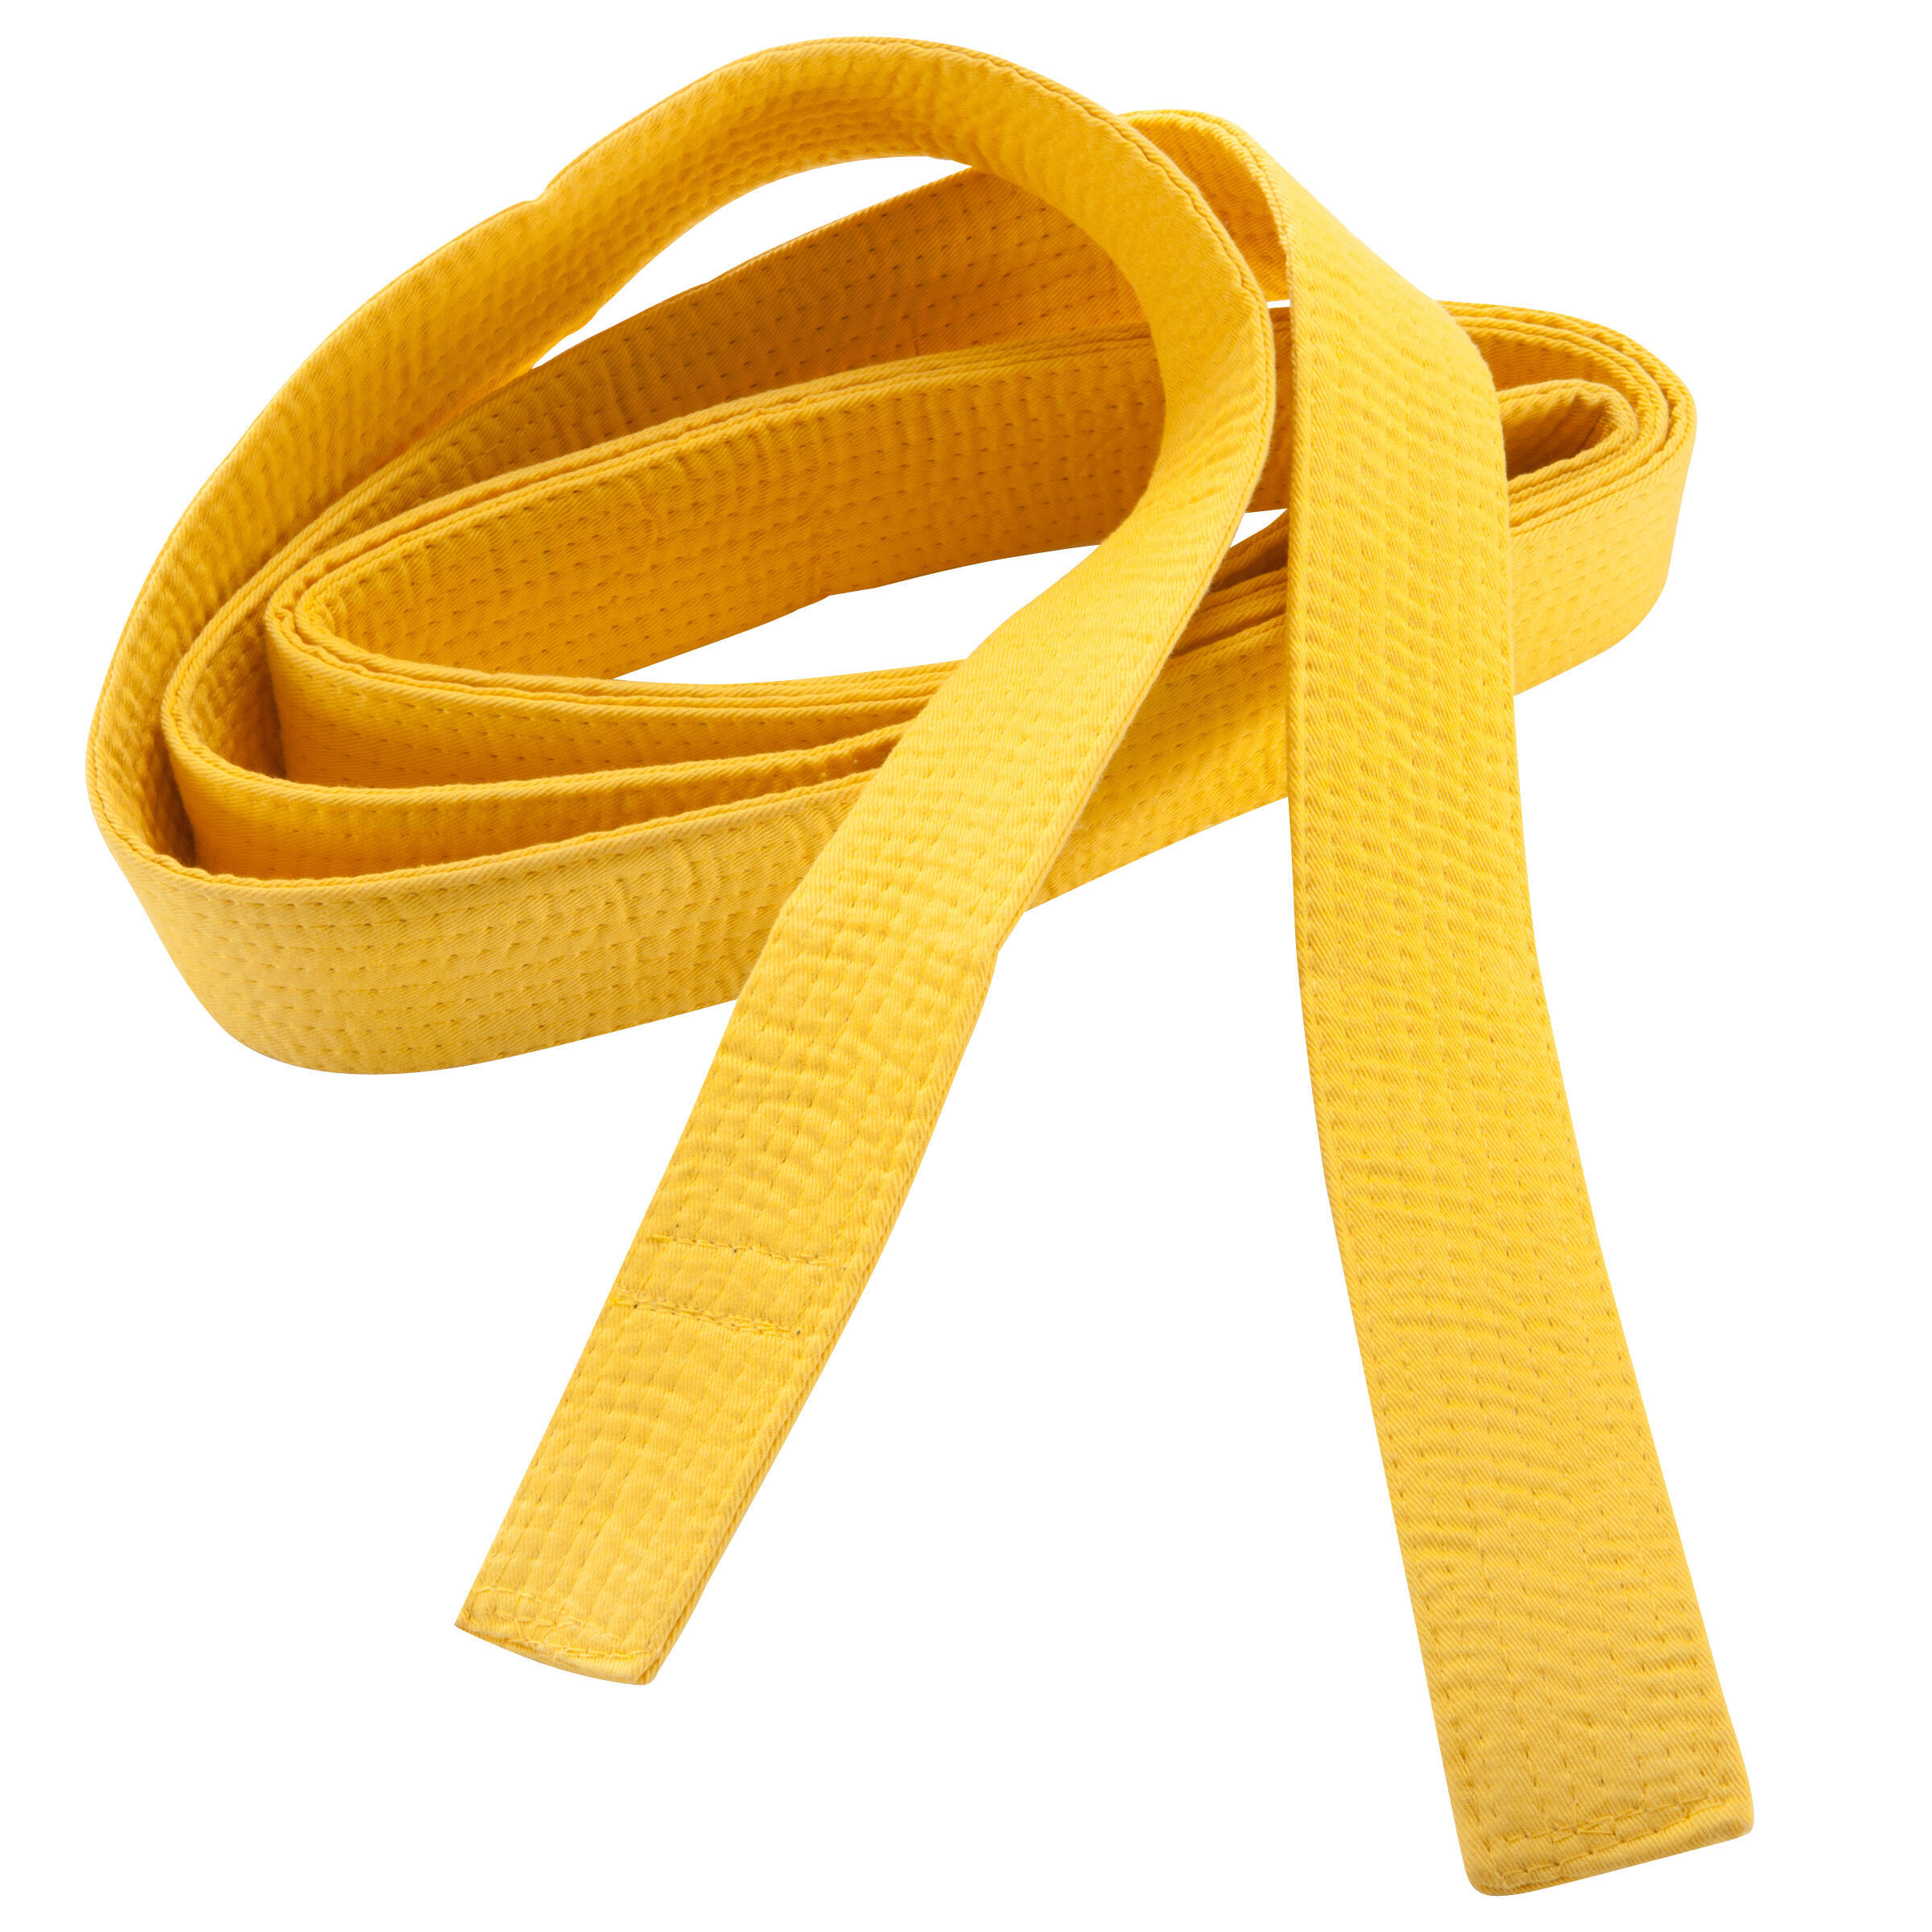 Пояс для единоборств 2,80 м желтый OUTSHOCK, солнечно-желтый пояса для единоборств adidas пояс для единоборств adidas club желтый